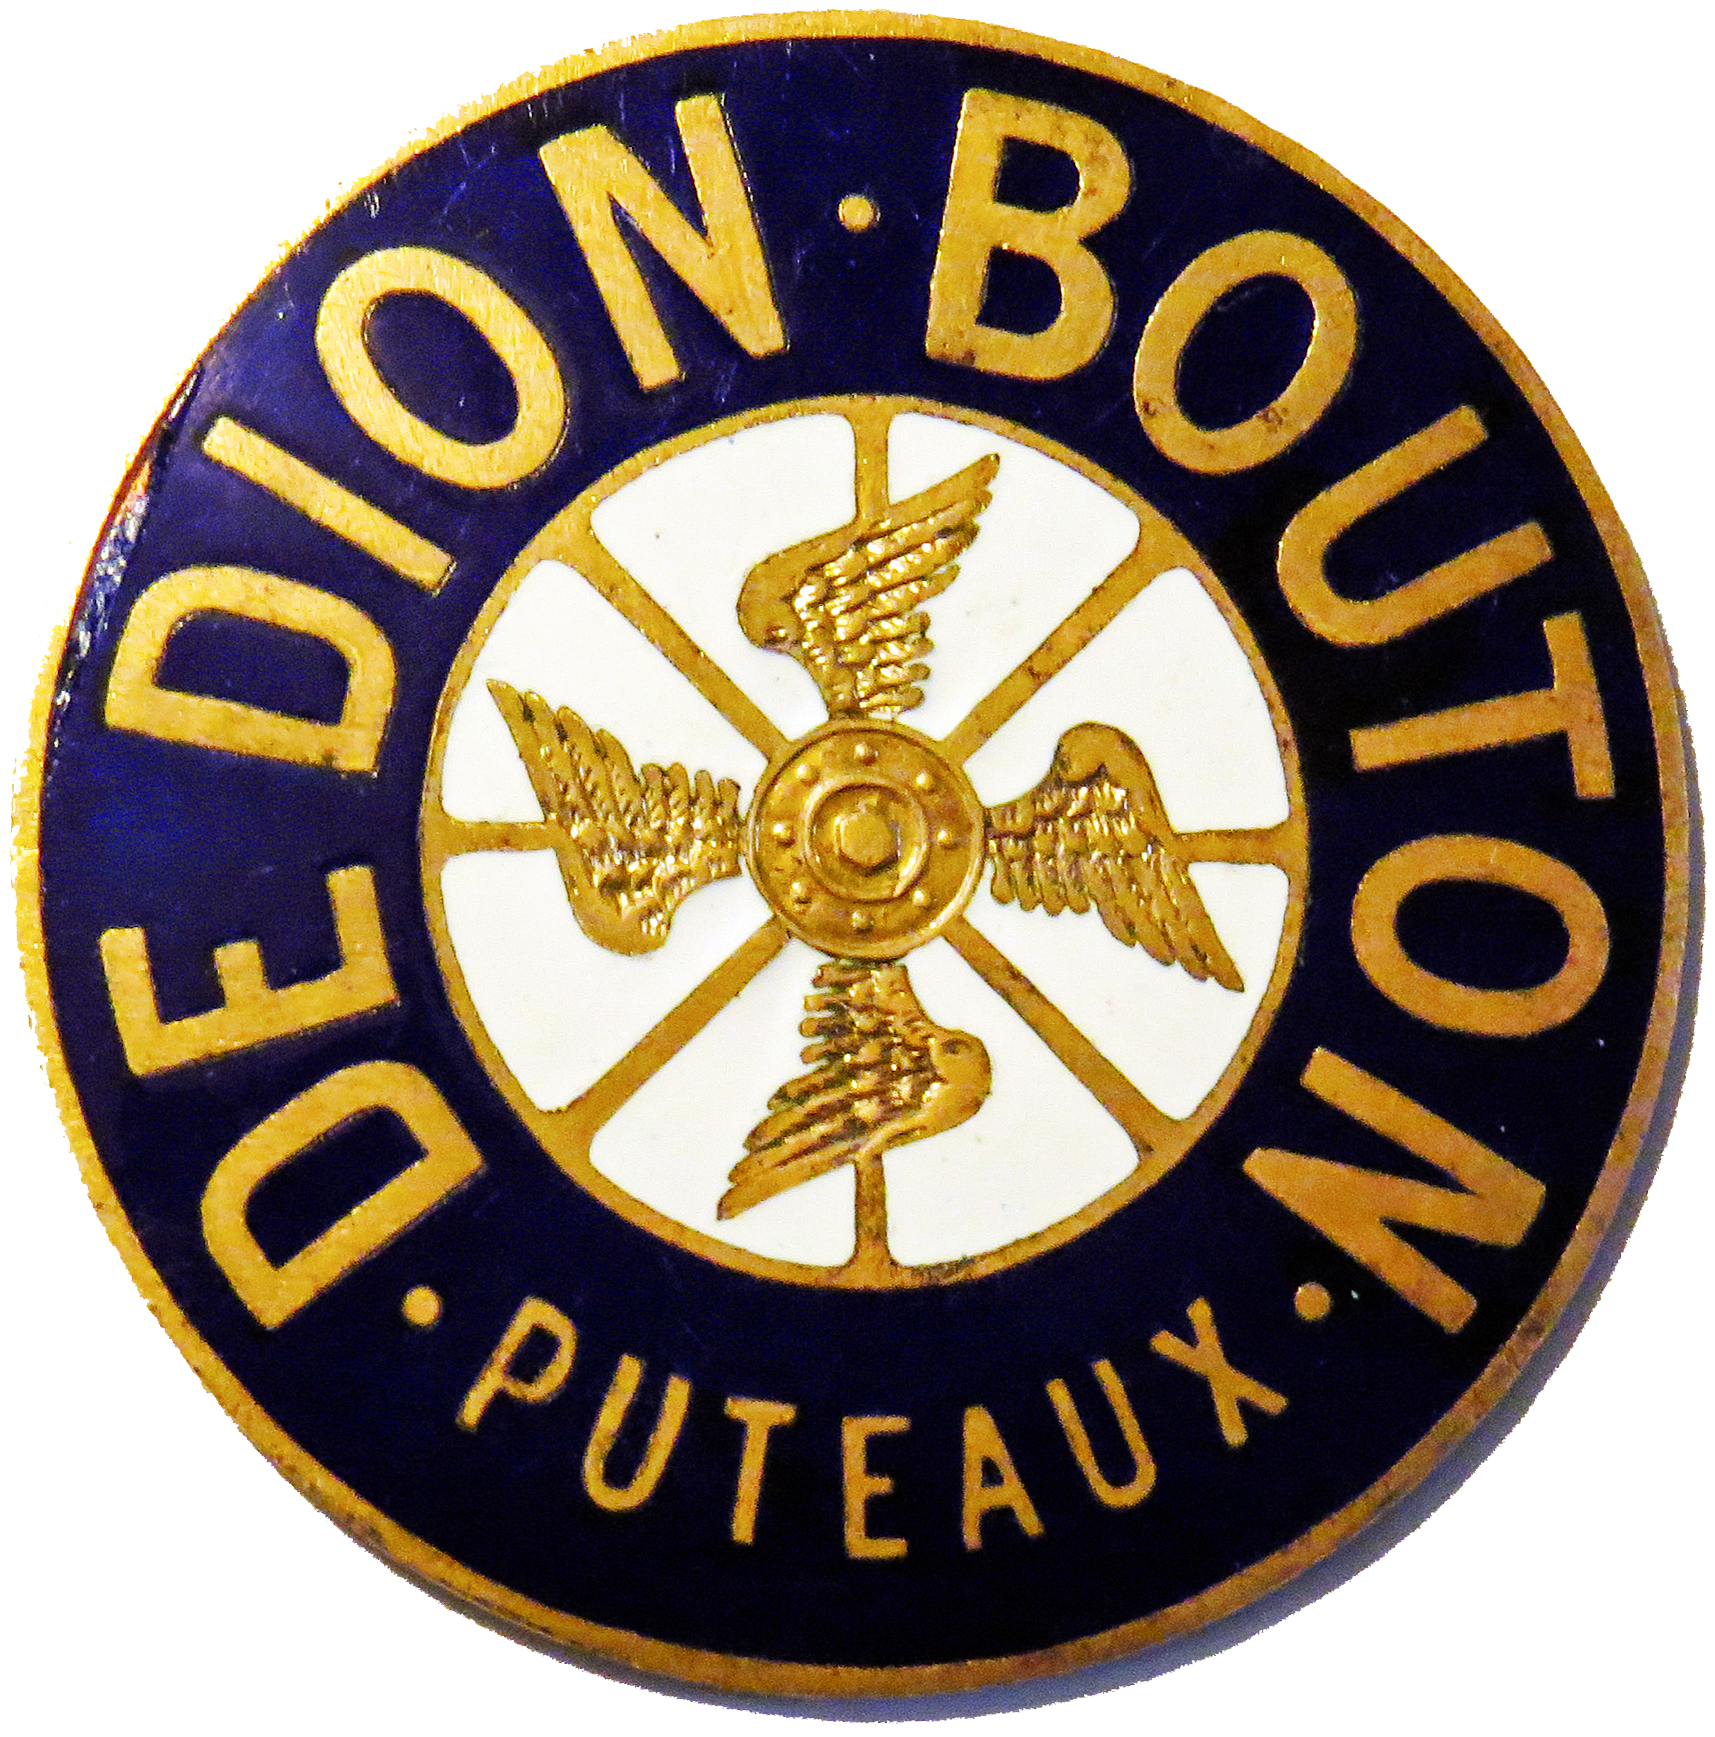 Embleme_De_Dion-Bouton-1.jpg